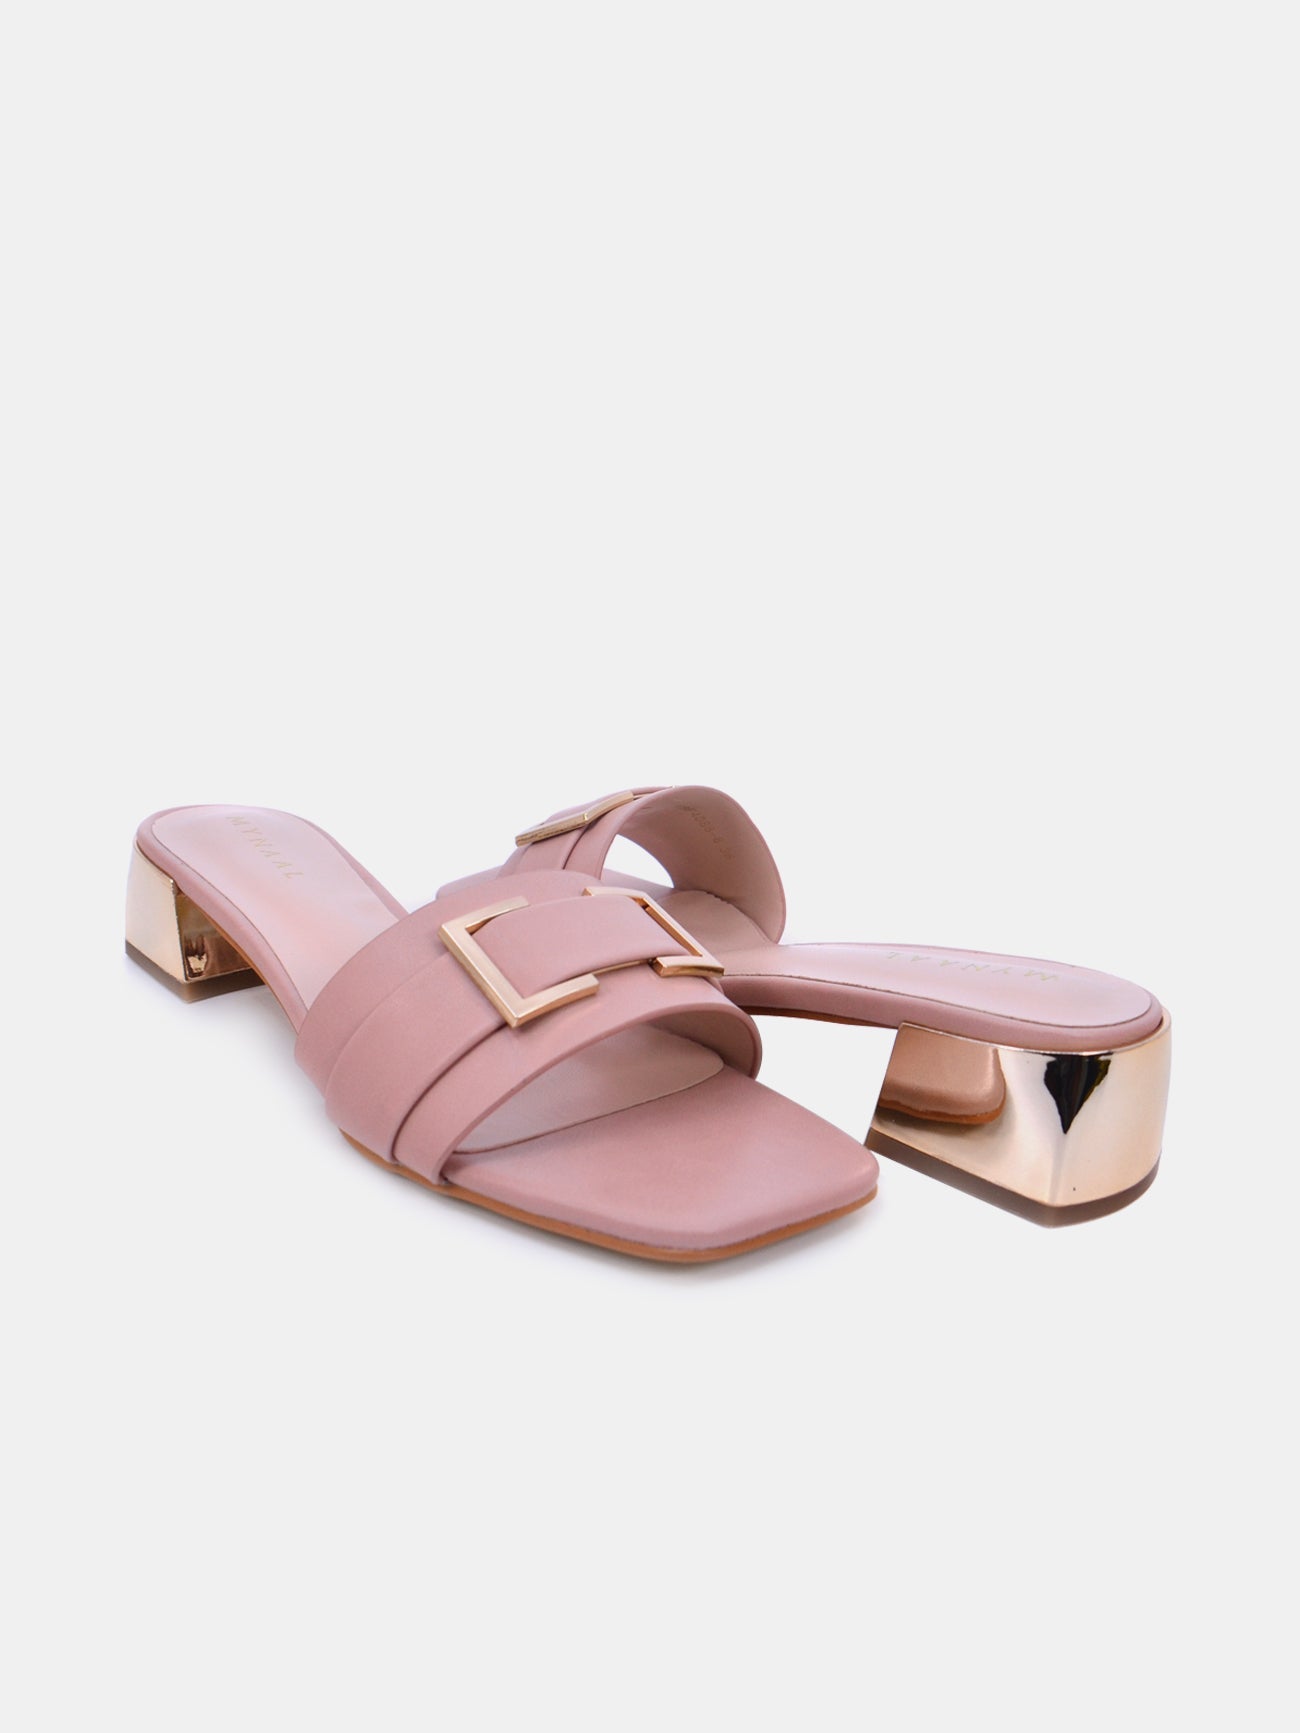 Mynaal Serix Women's Block Heel Sandals #color_Pink